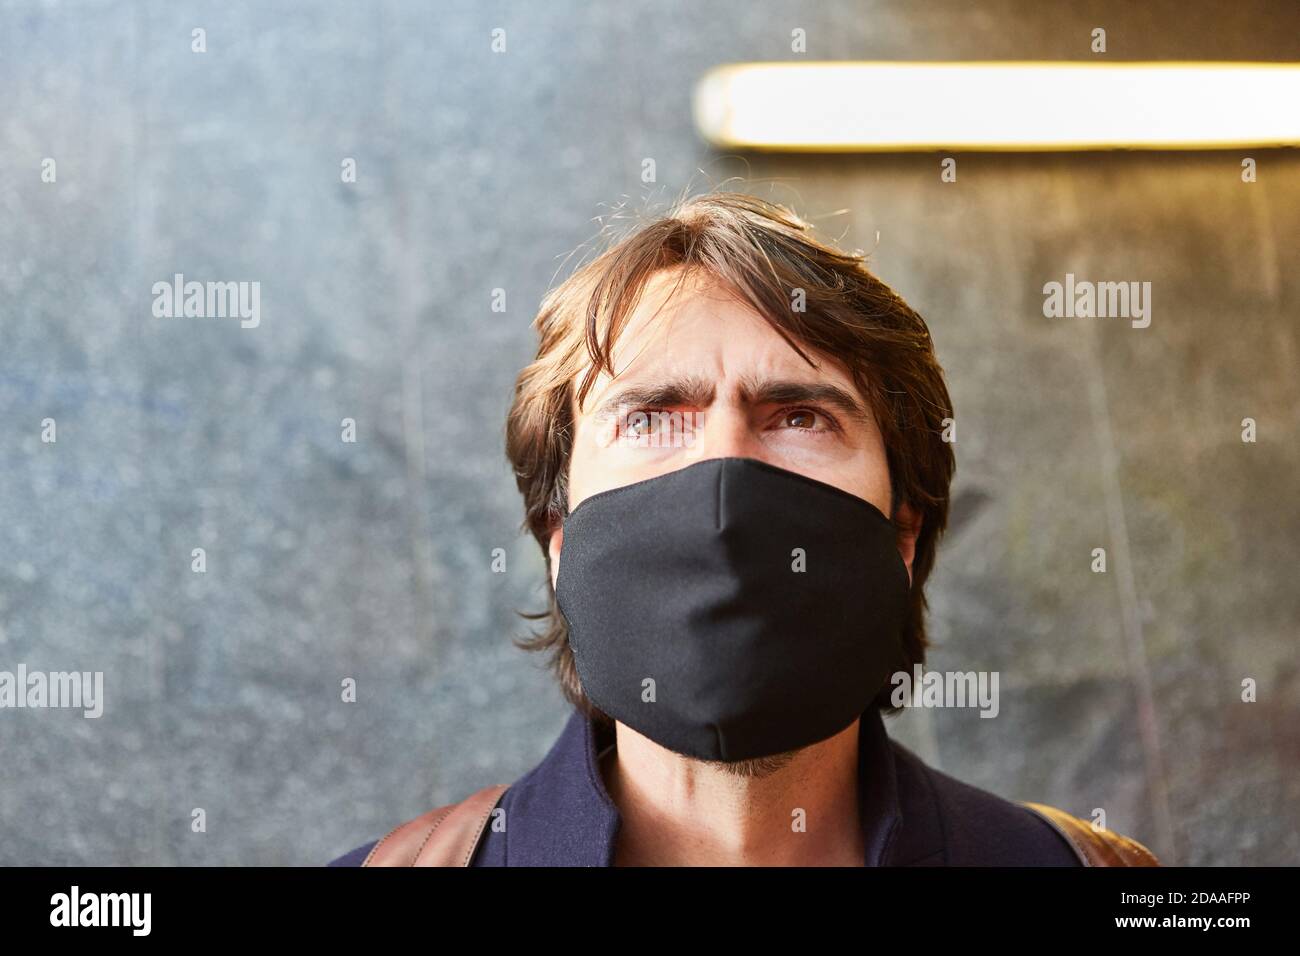 Uomo con maschera facciale come prevenzione contro il coronavirus in Covid-19 pandemia Foto Stock